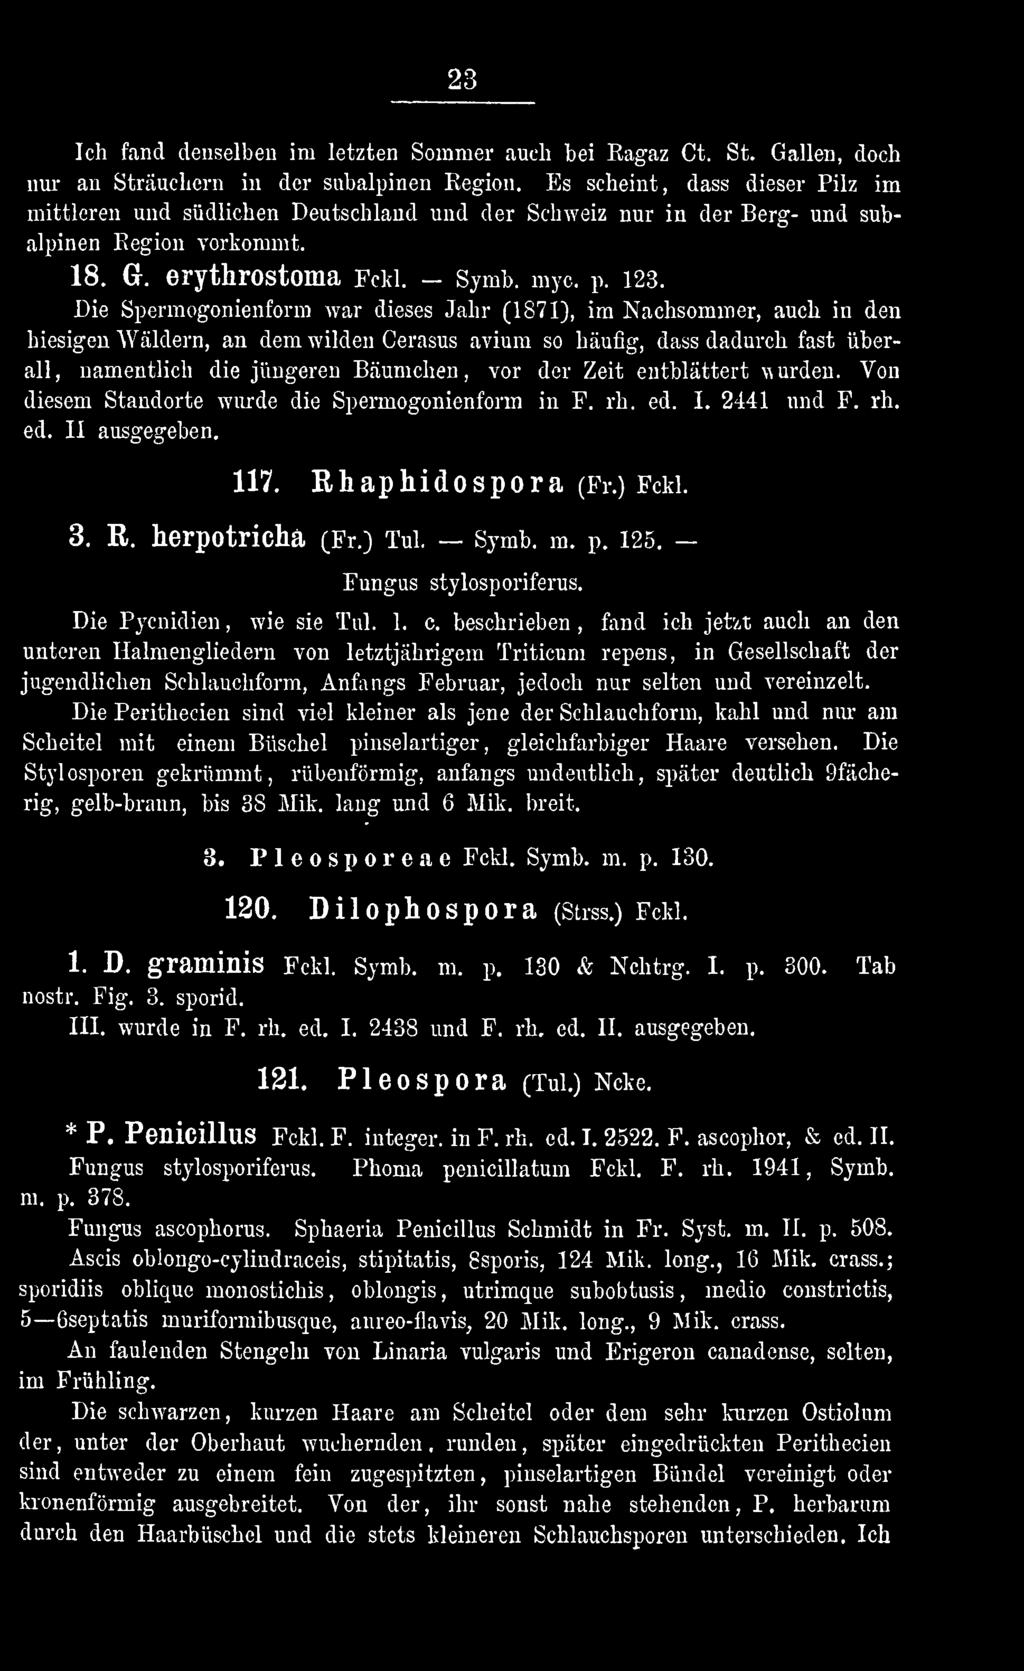 125. Fungus stylosporiferus. Die Pycnidien wie, sie Tul. 1. c.